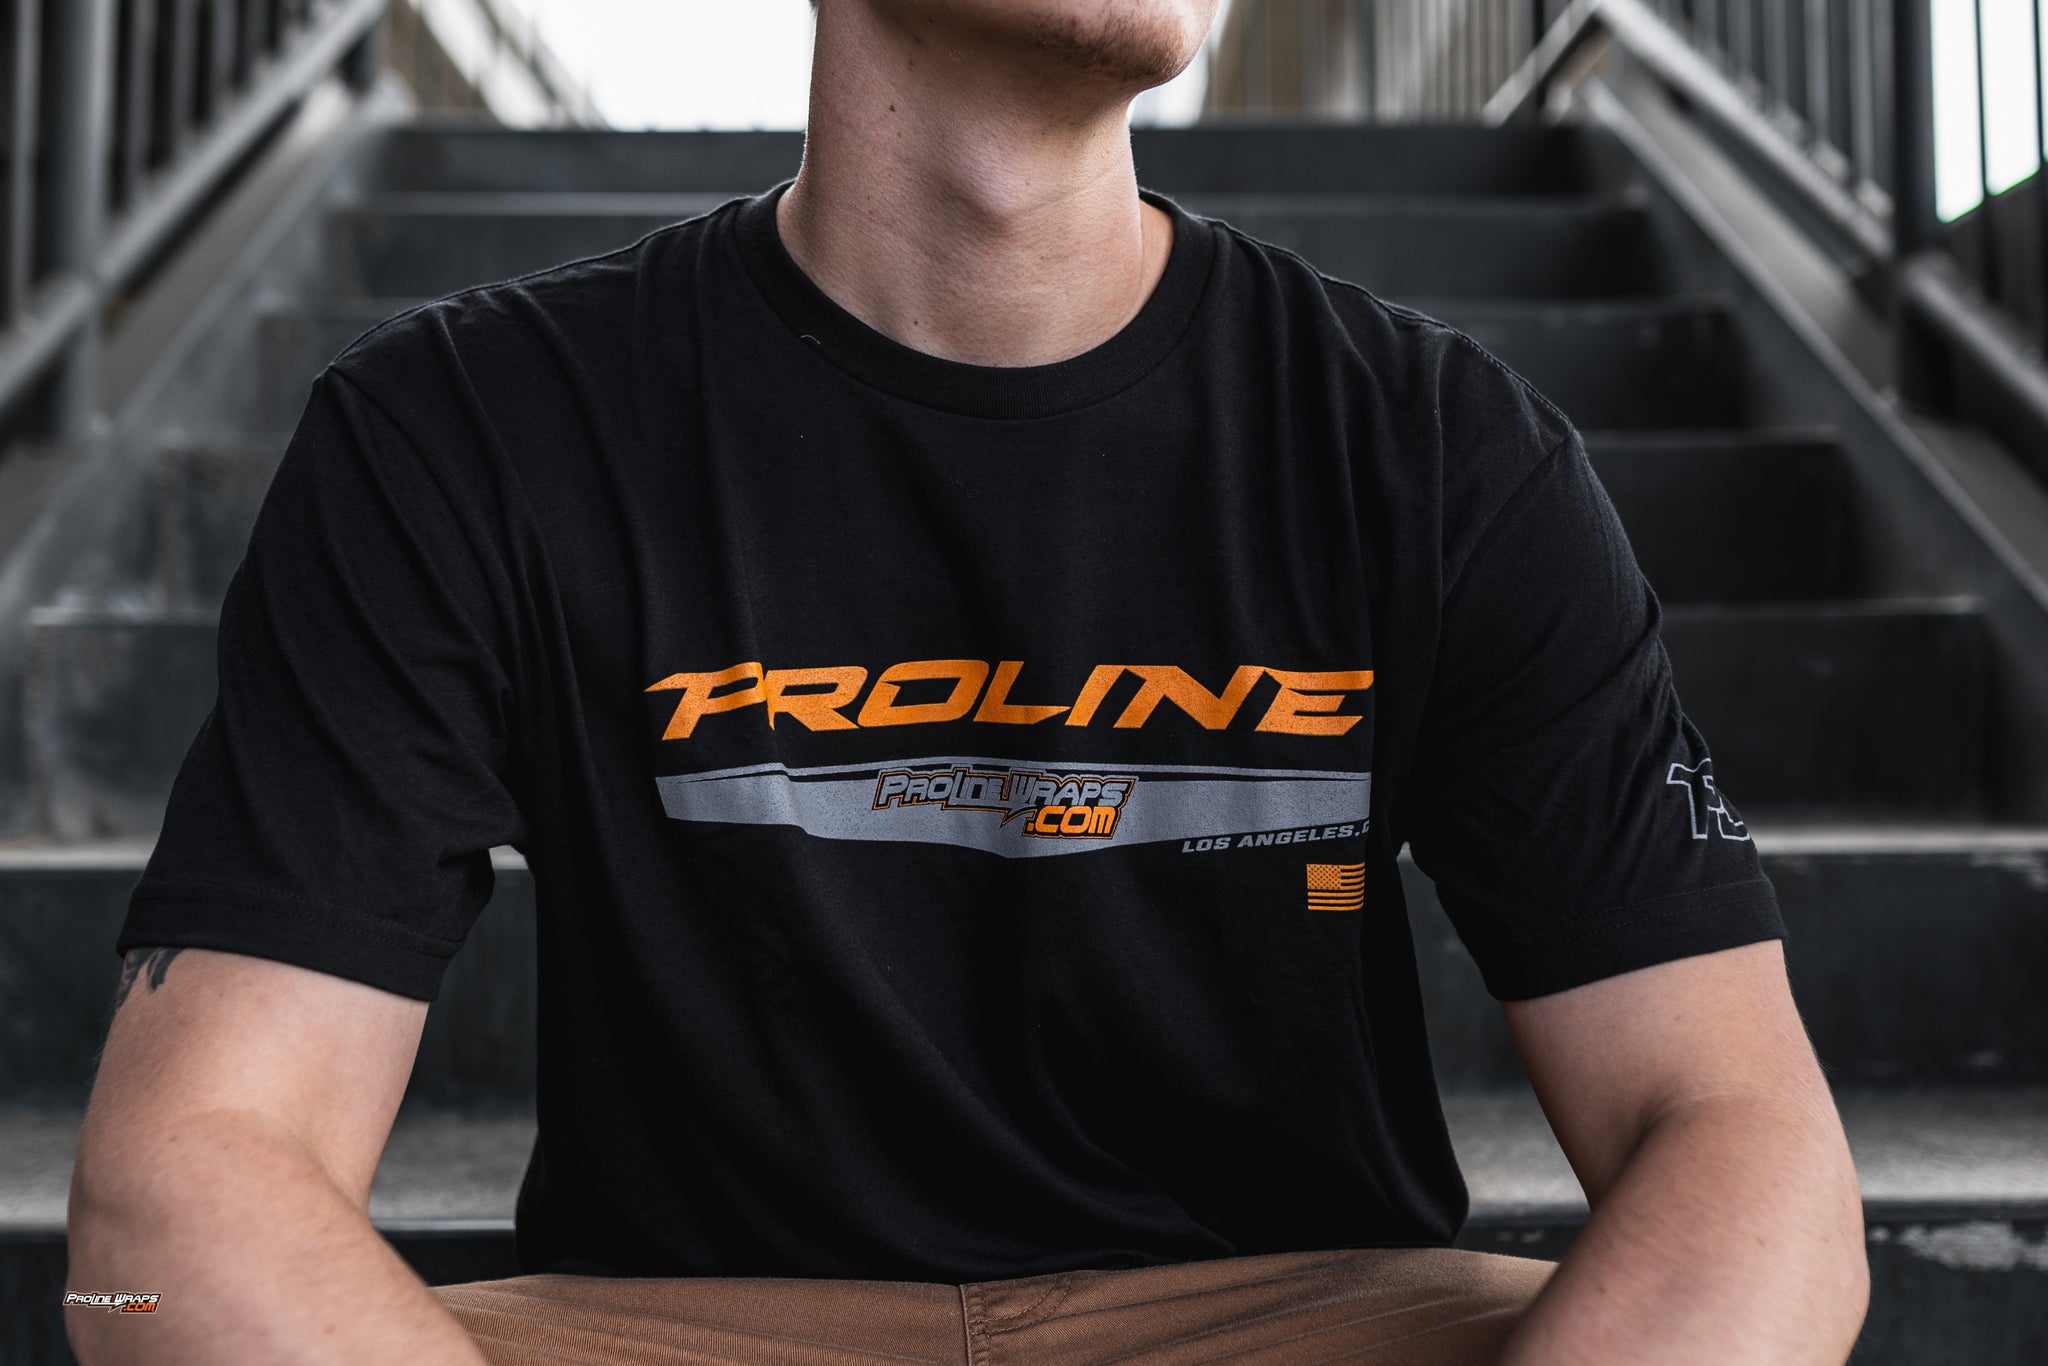 Proline Brand - Proline